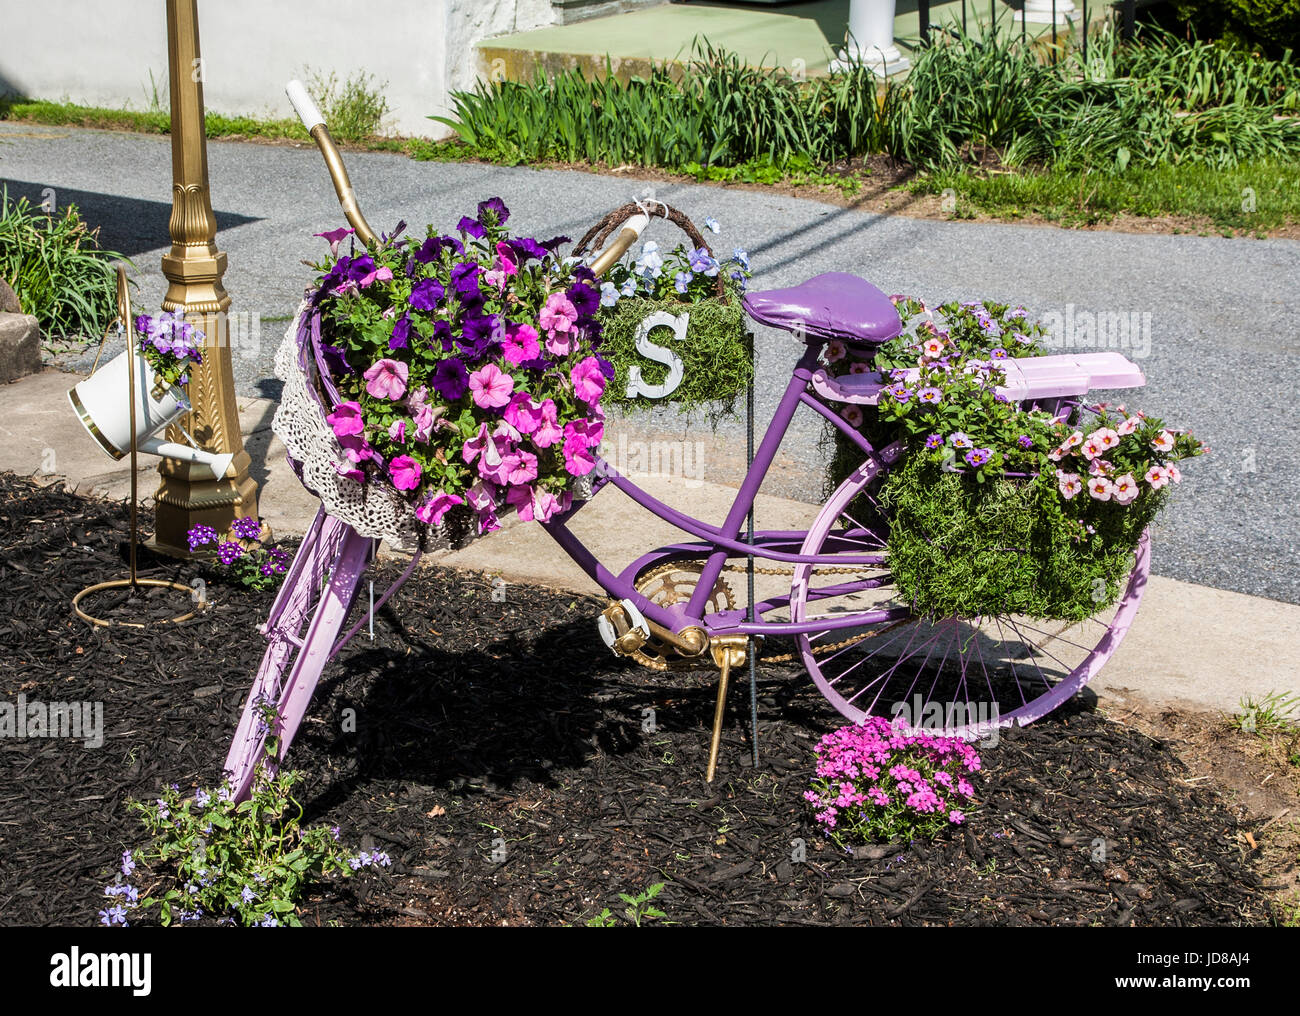 Bicicletta da giardino in stile vintage dipinta di lavanda e decorata con  fiori in vaso, Lancaster County, Pennsylvania, USA, Stati Uniti, fiori in  bicicletta, vasi di fiori Foto stock - Alamy